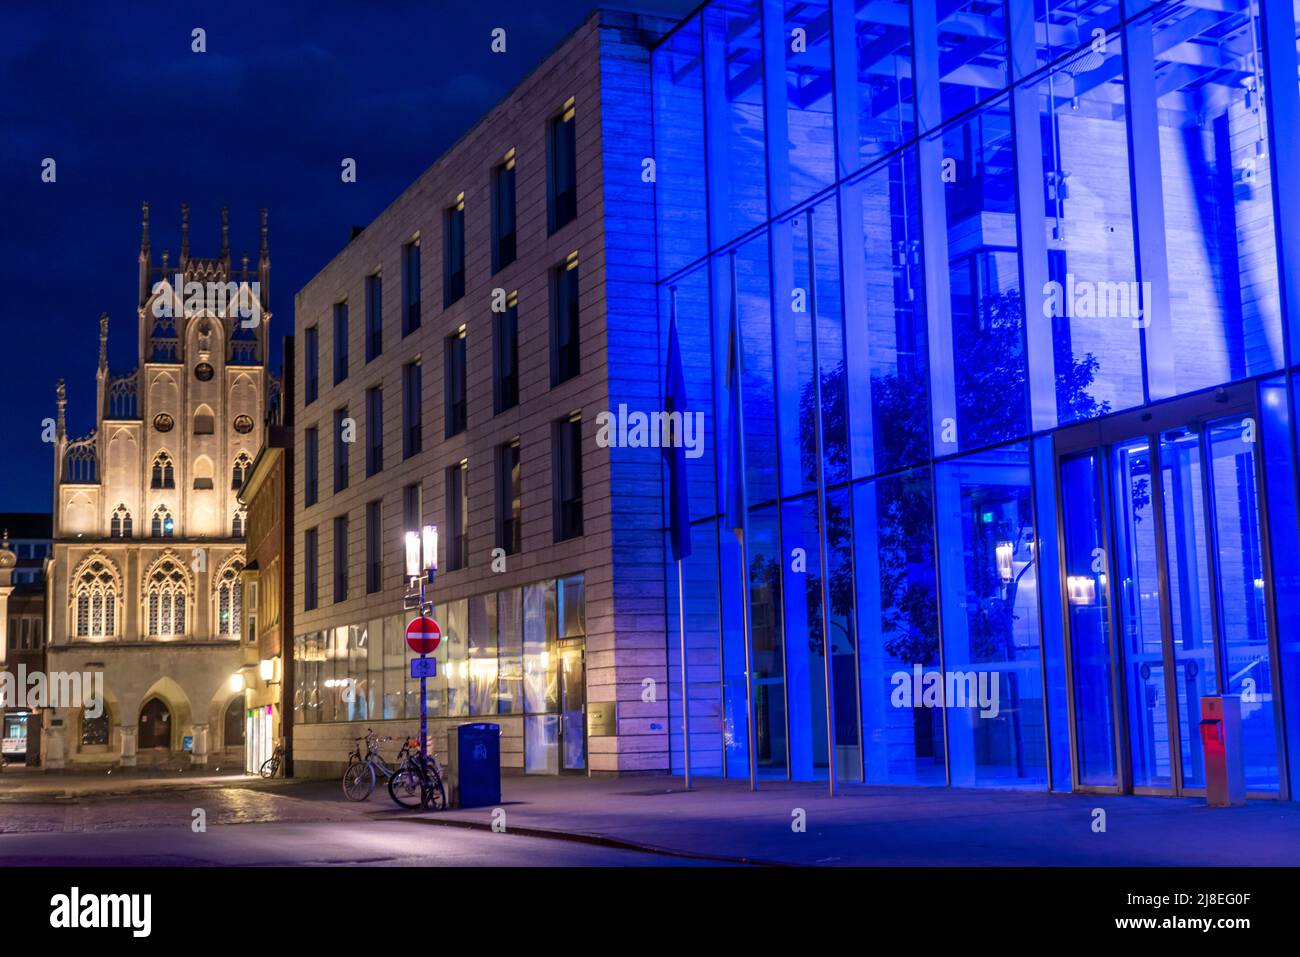 Historische Altstadt, Fassade des historischen Rathauses, blau beleuchtetes Gebäude der Bezirksregierung Münster, beleuchtete Barriere, Poller, in Stockfoto